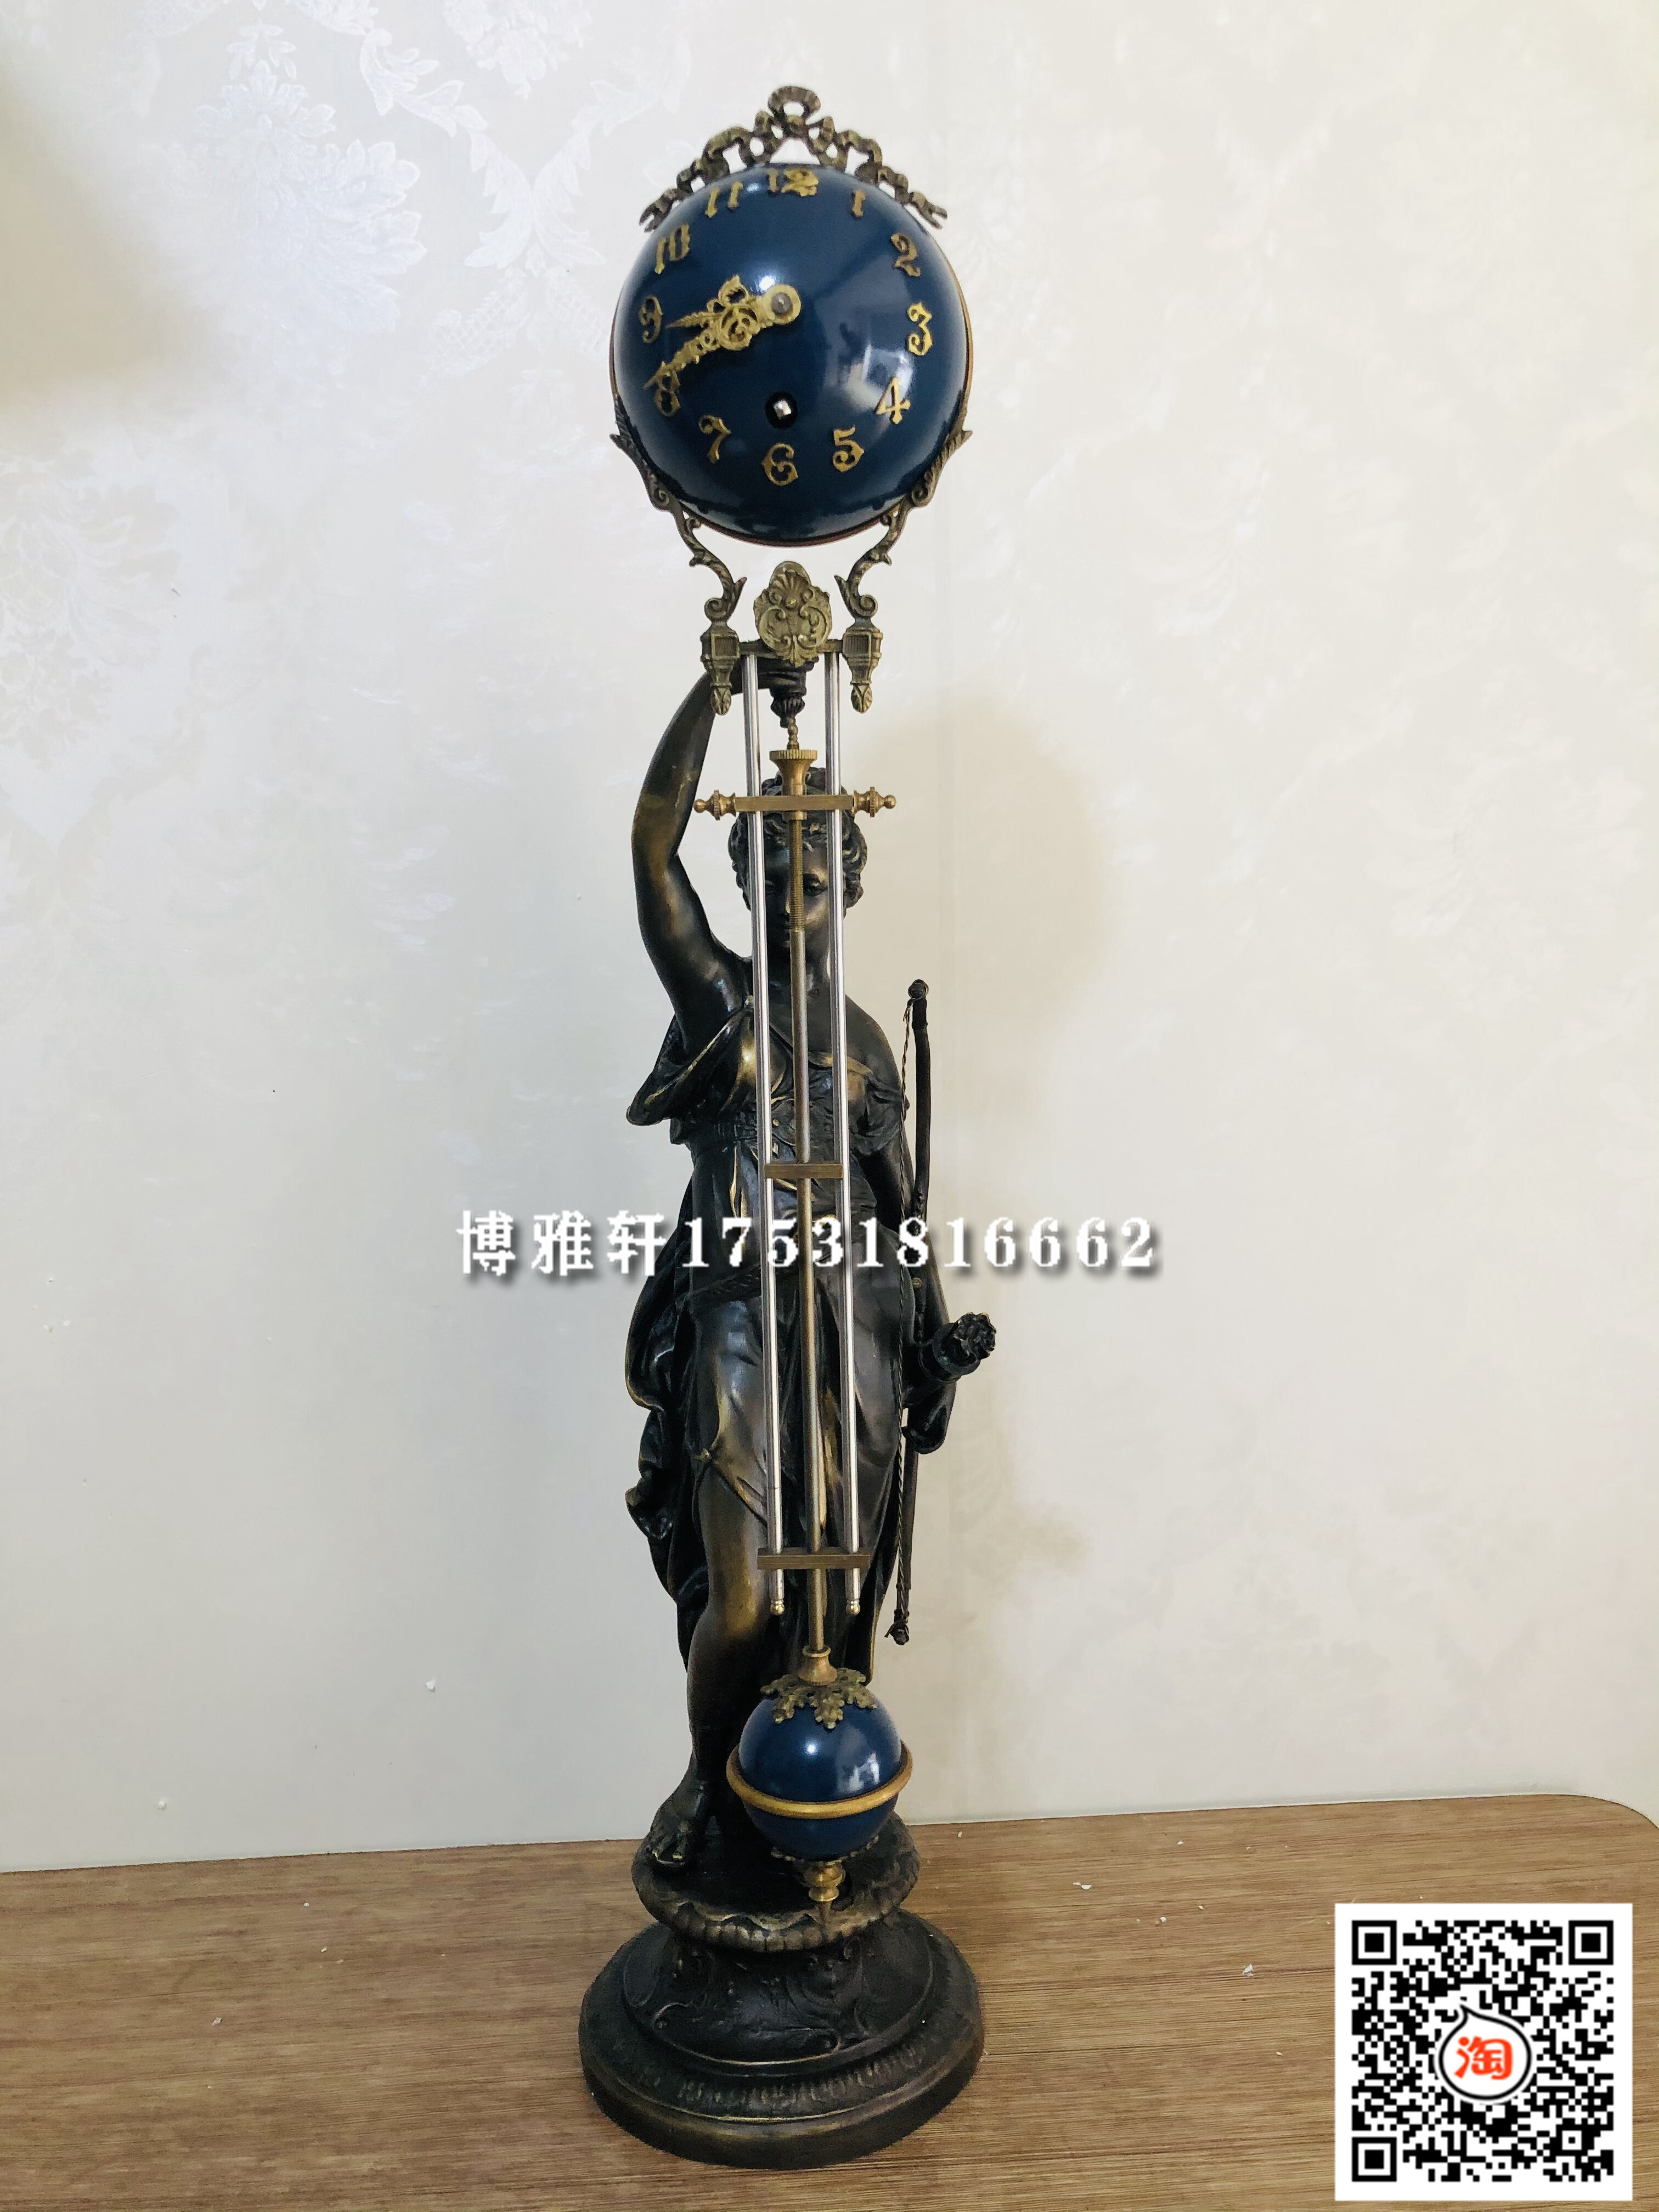 钟表机械老式发条摇摆钟复古铜铸西洋人物雕塑摇表家居客厅仿古钟